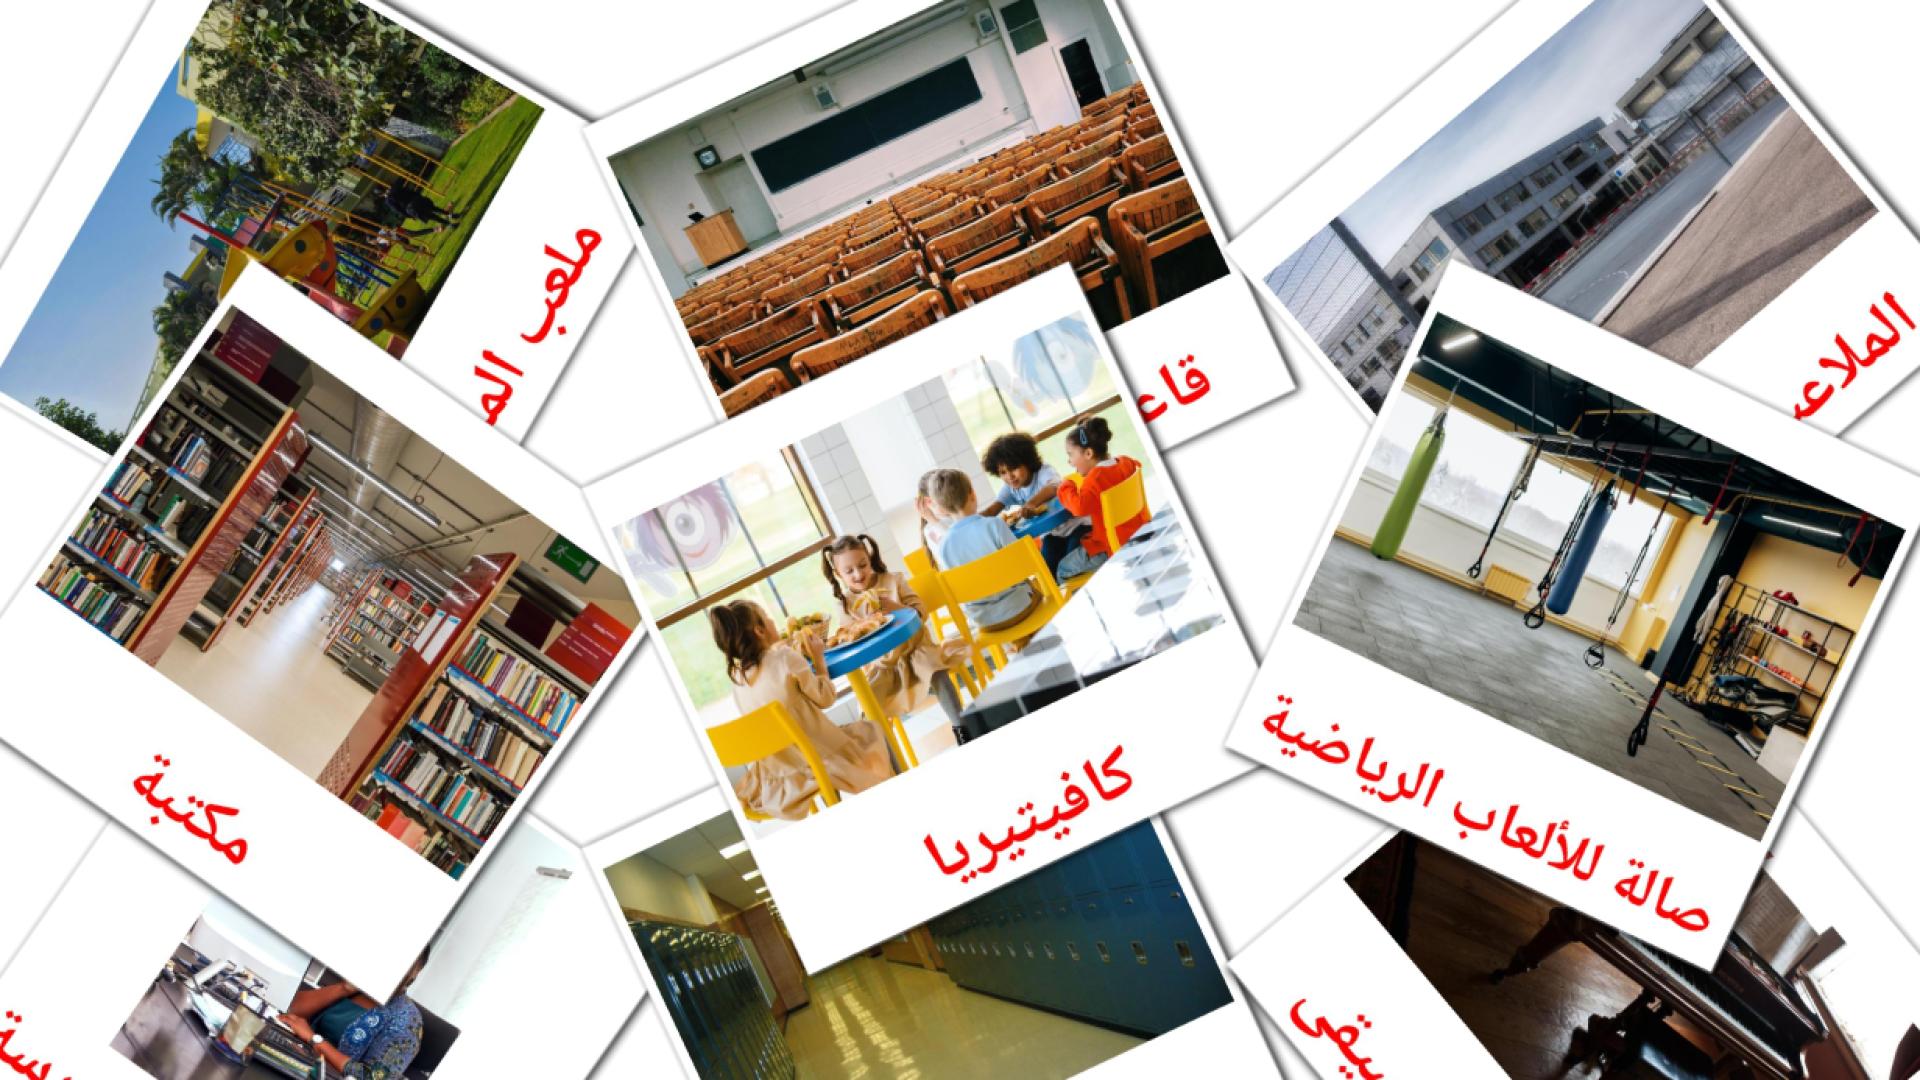 Schoolgebouw - arabische woordenschatkaarten